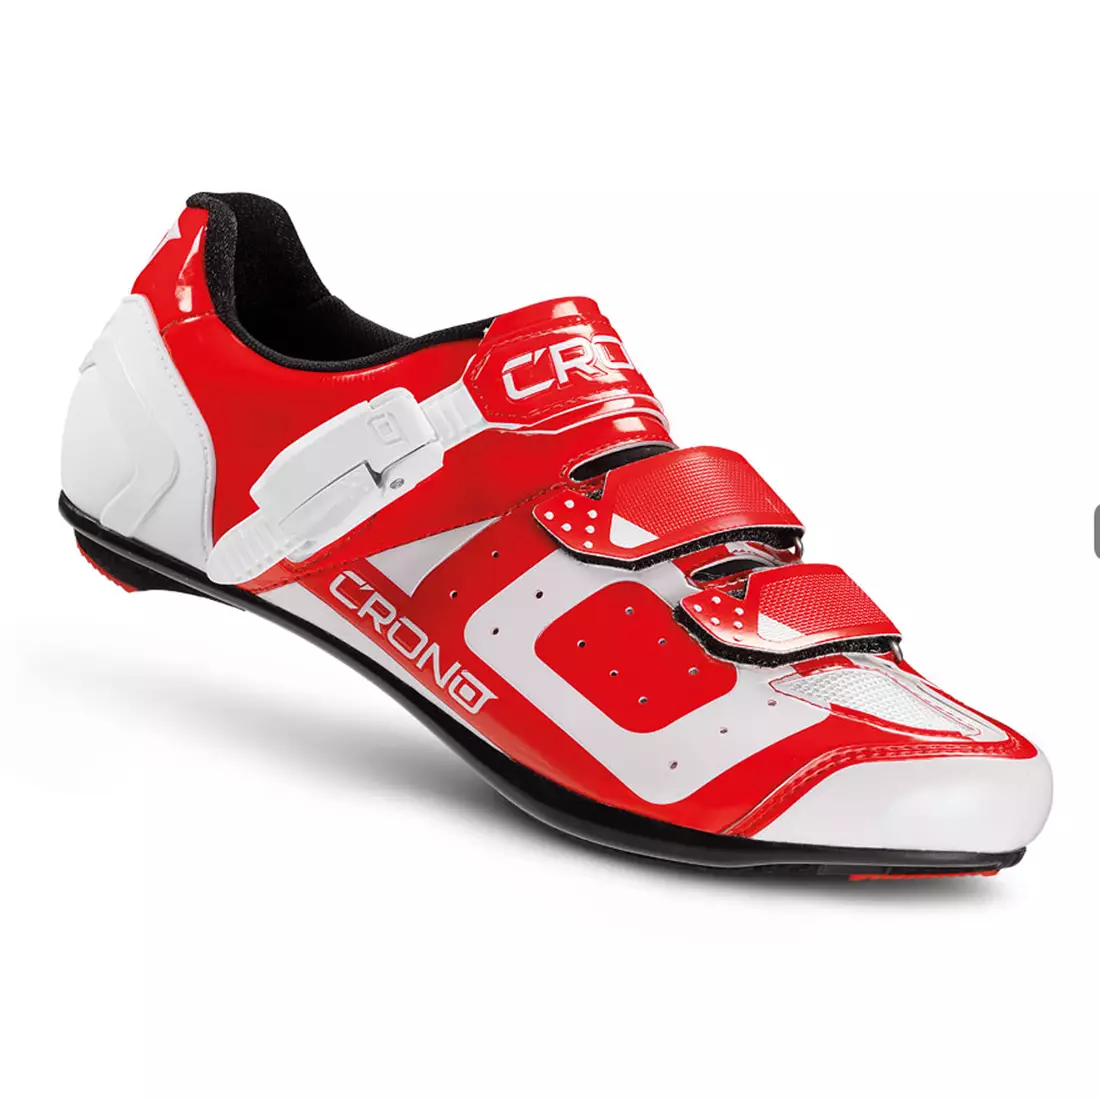 CRONO CR3 nylon - országúti kerékpáros cipő, piros